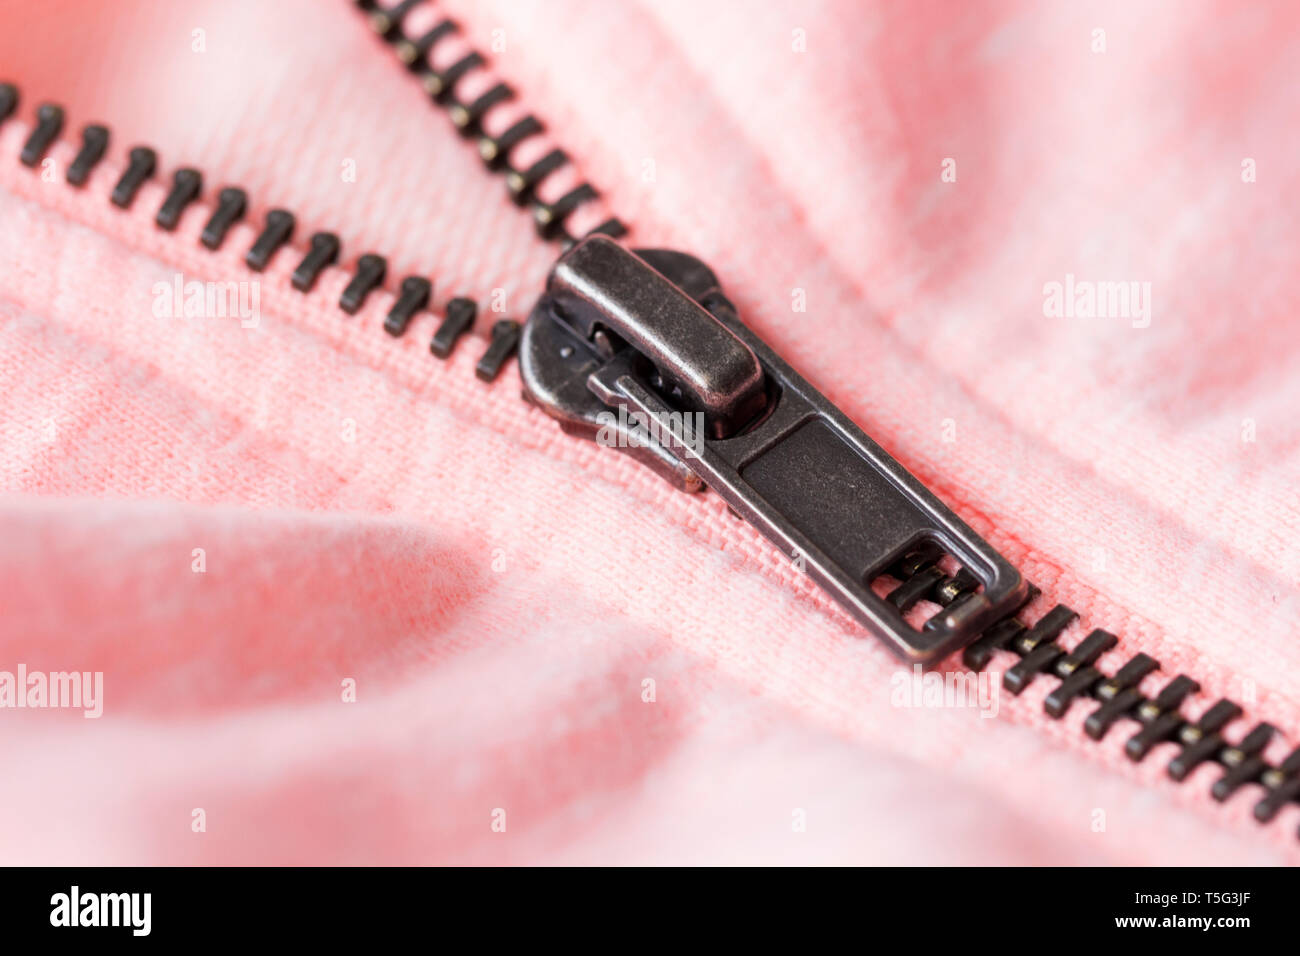 Vista de cerca de un zip en una chaqueta rosa Foto de stock